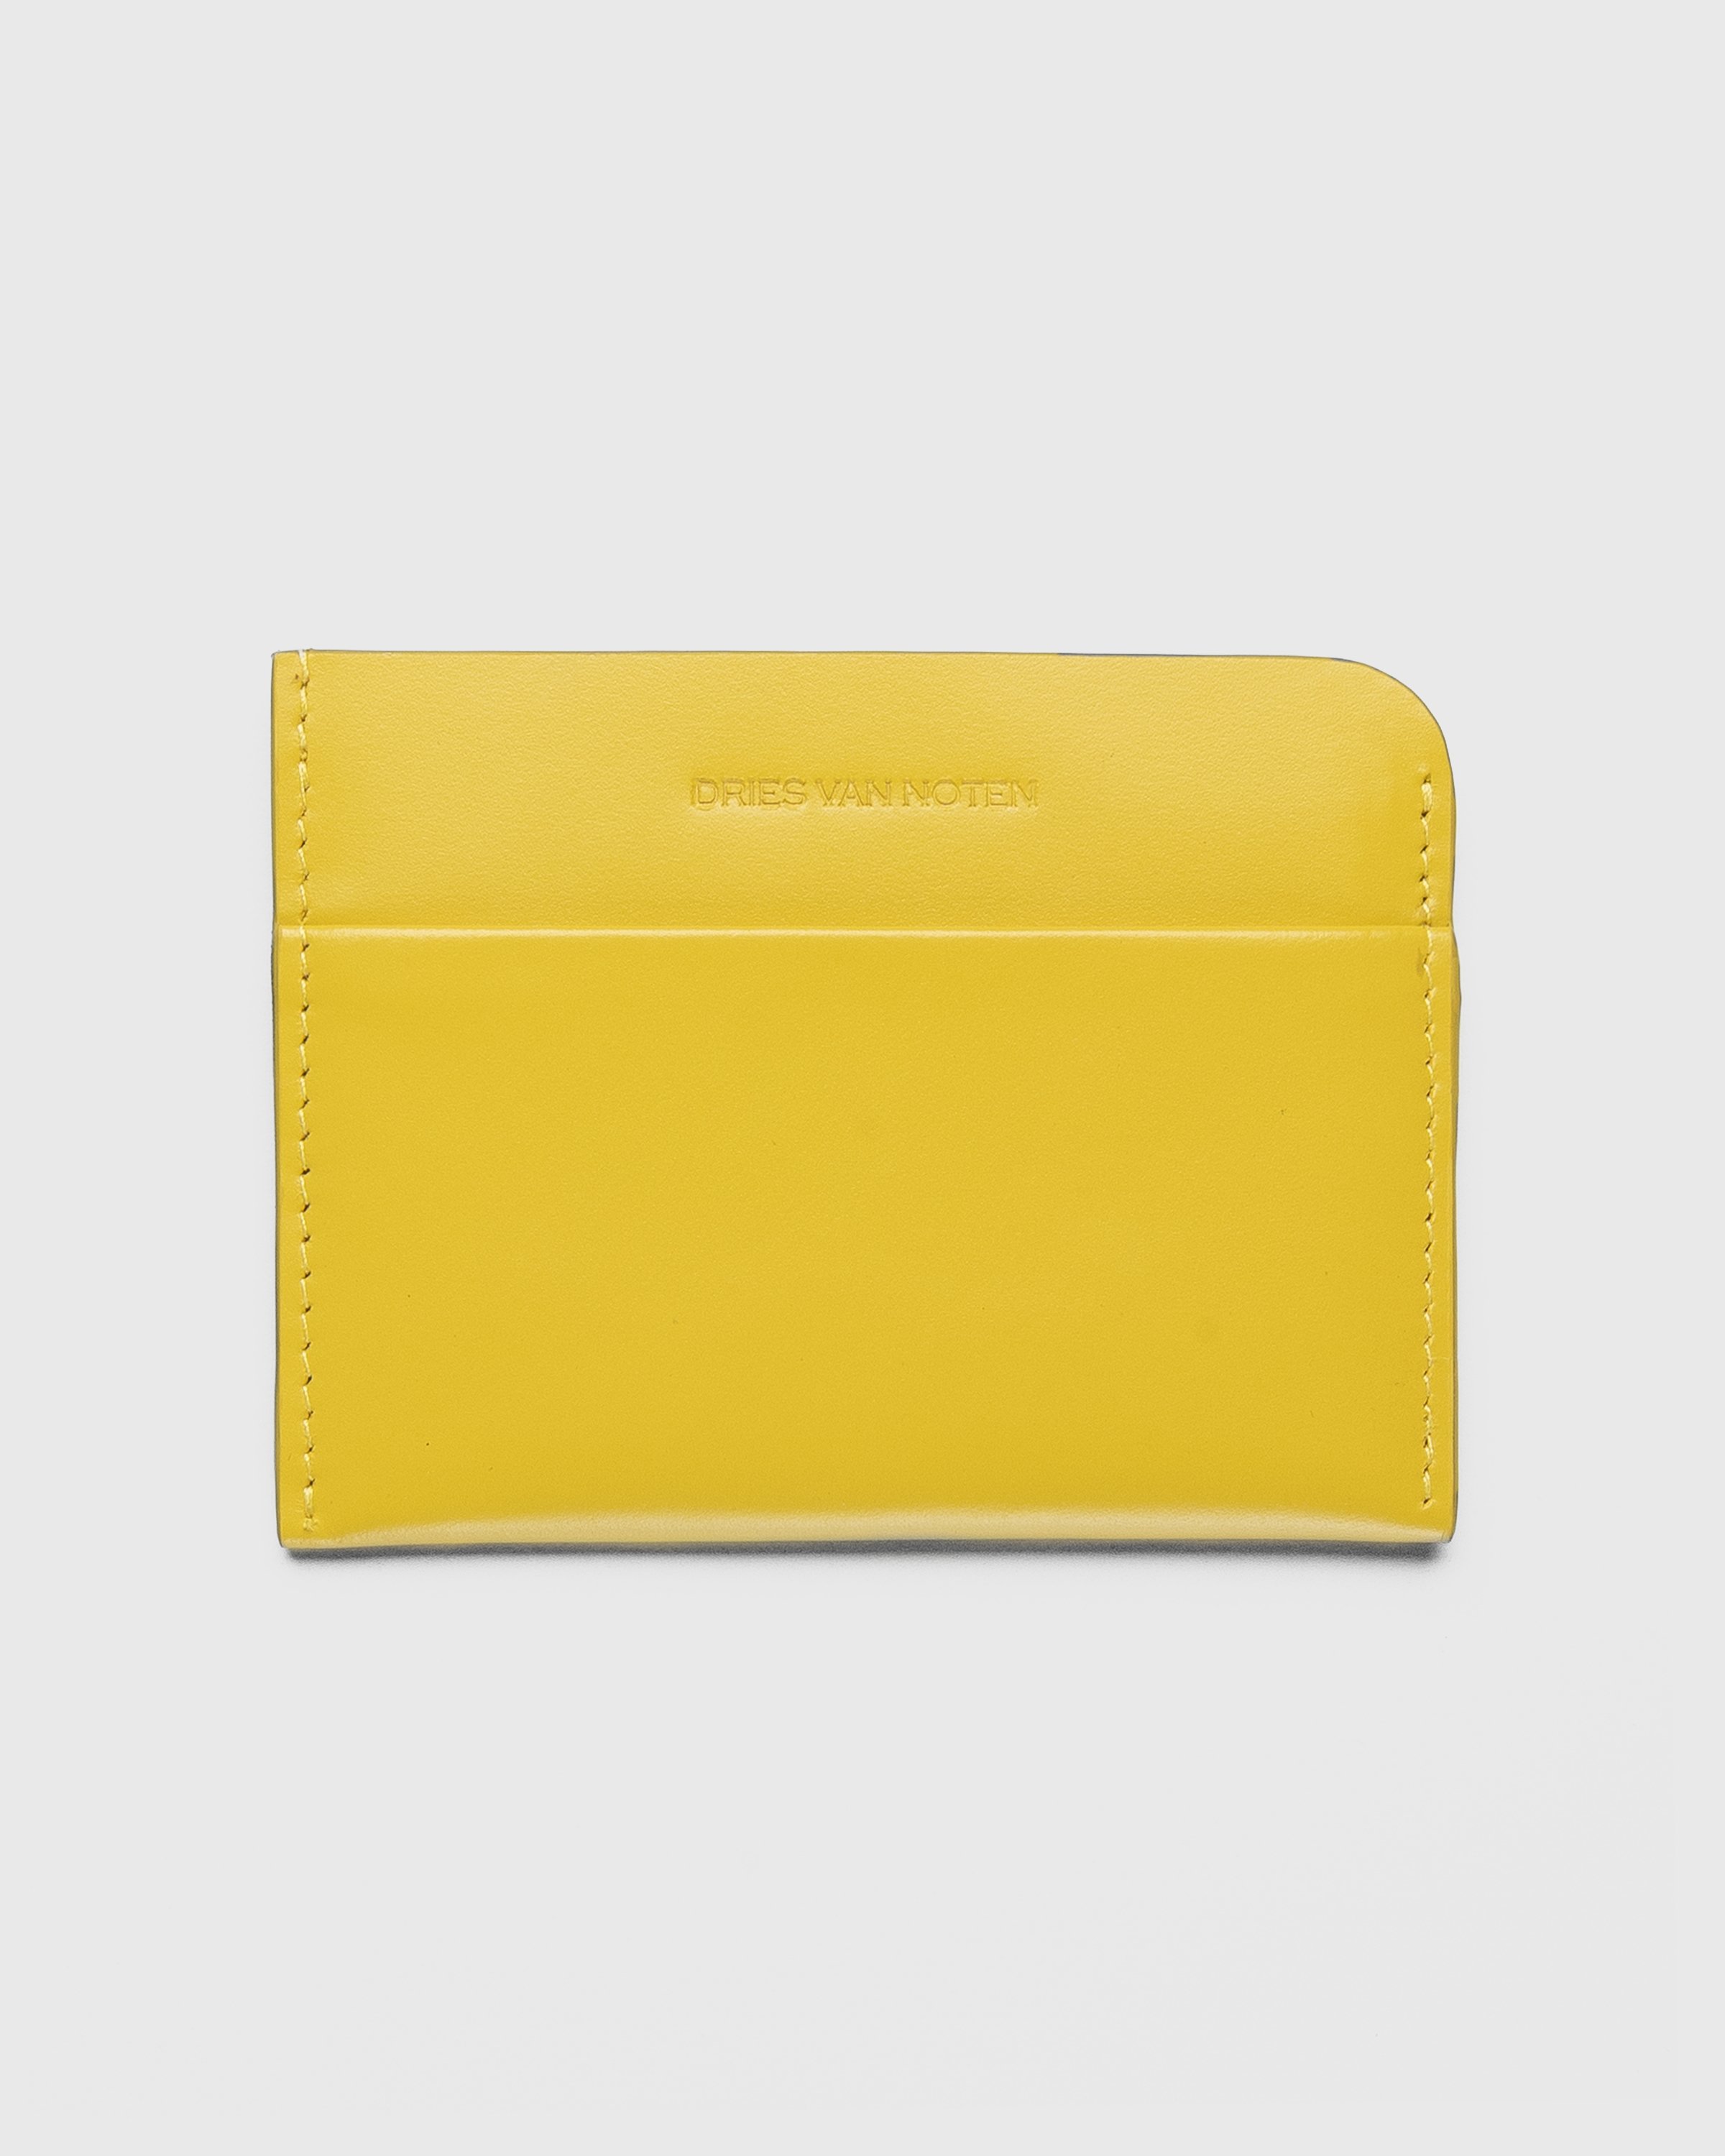 Dries van Noten - Cardholder Yellow - Accessories - Yellow - Image 1